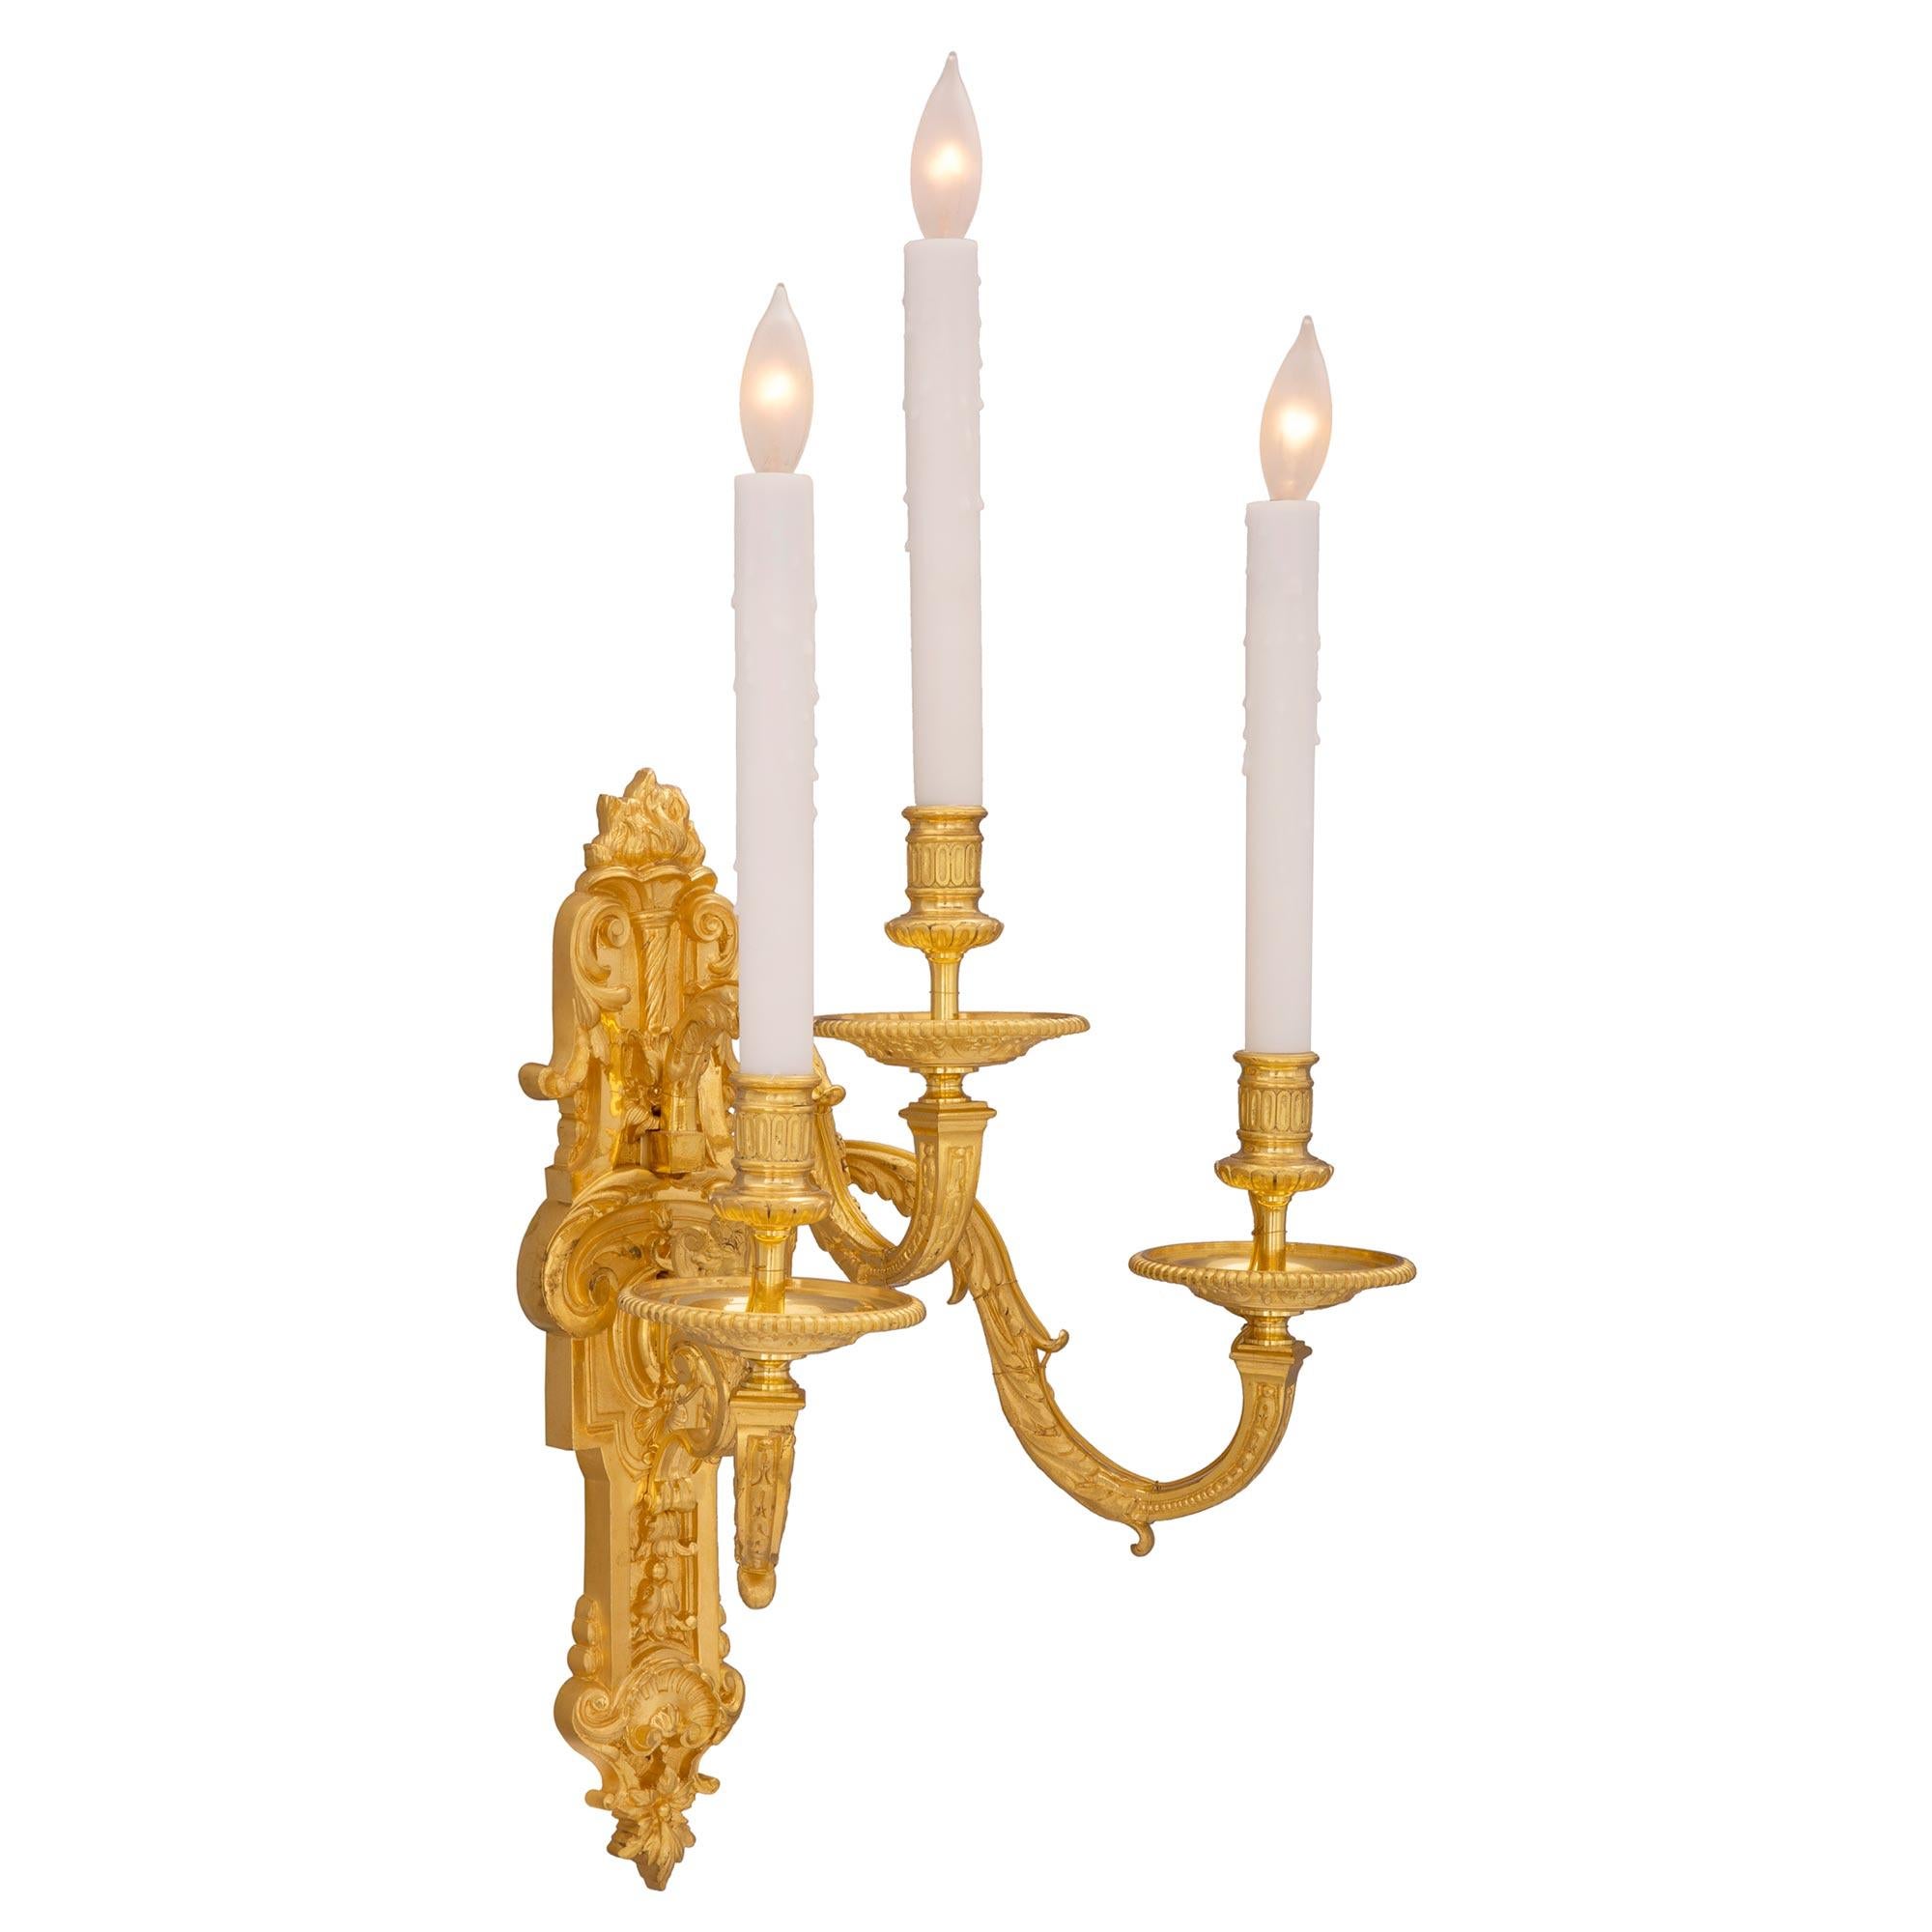 Paire d'appliques en bronze doré de style Louis XVI du XIXe siècle. Chaque applique à trois bras est centrée par une plaque dorsale richement ciselée et merveilleusement détaillée avec une réserve de coquillages au fond, de jolis motifs feuillagés